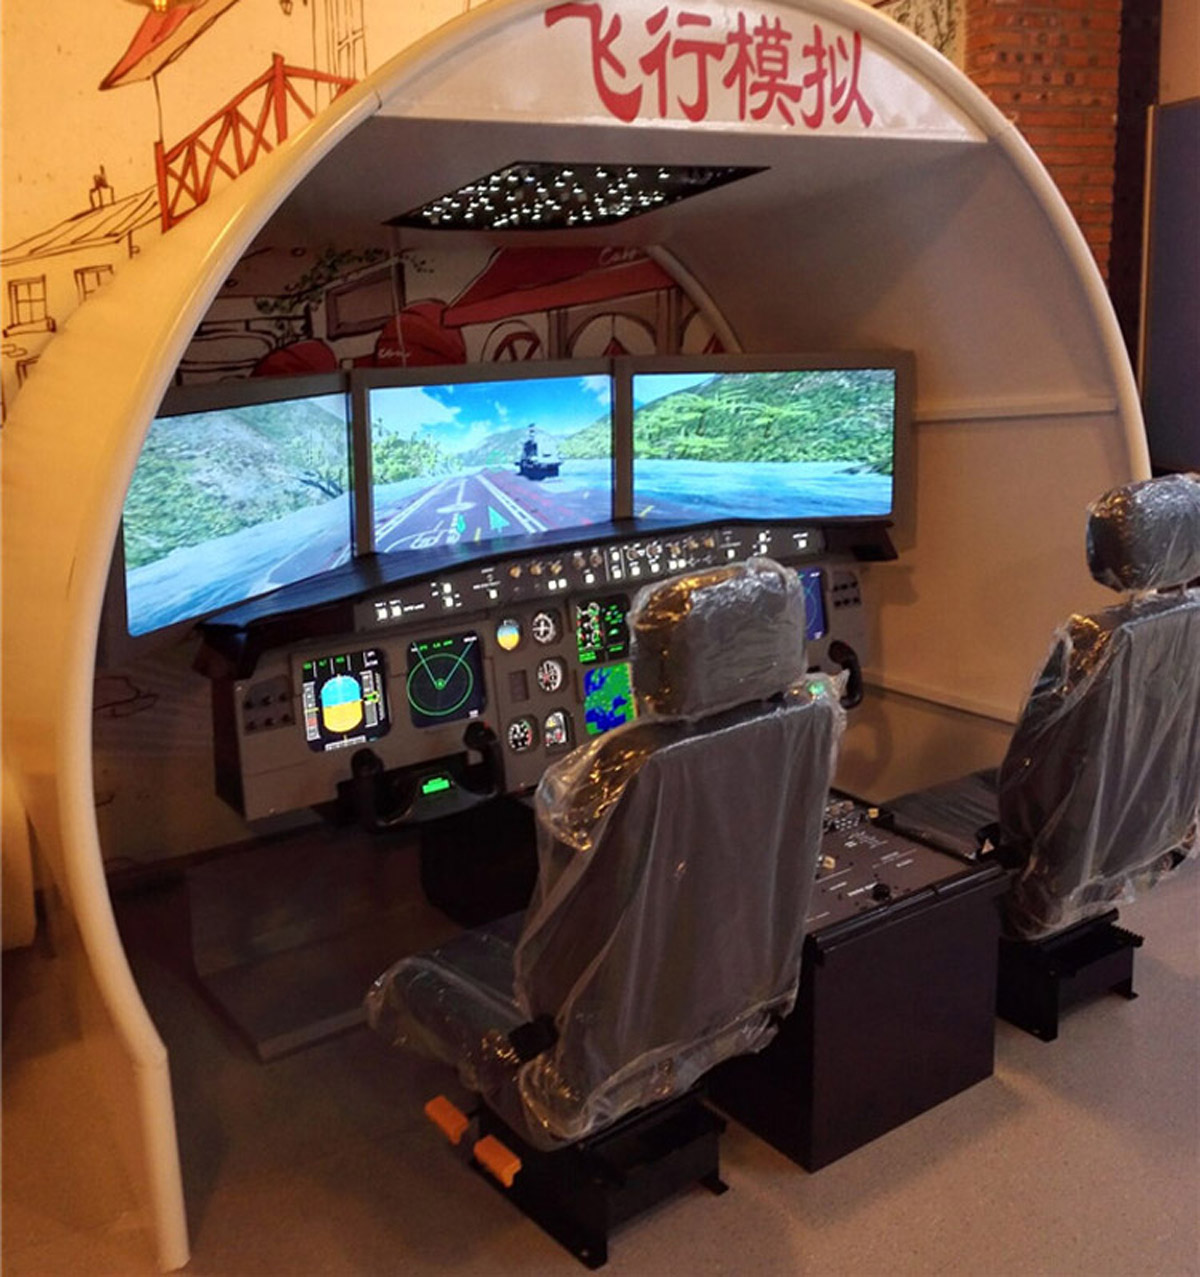 路北区展览展示空客飞行模拟器